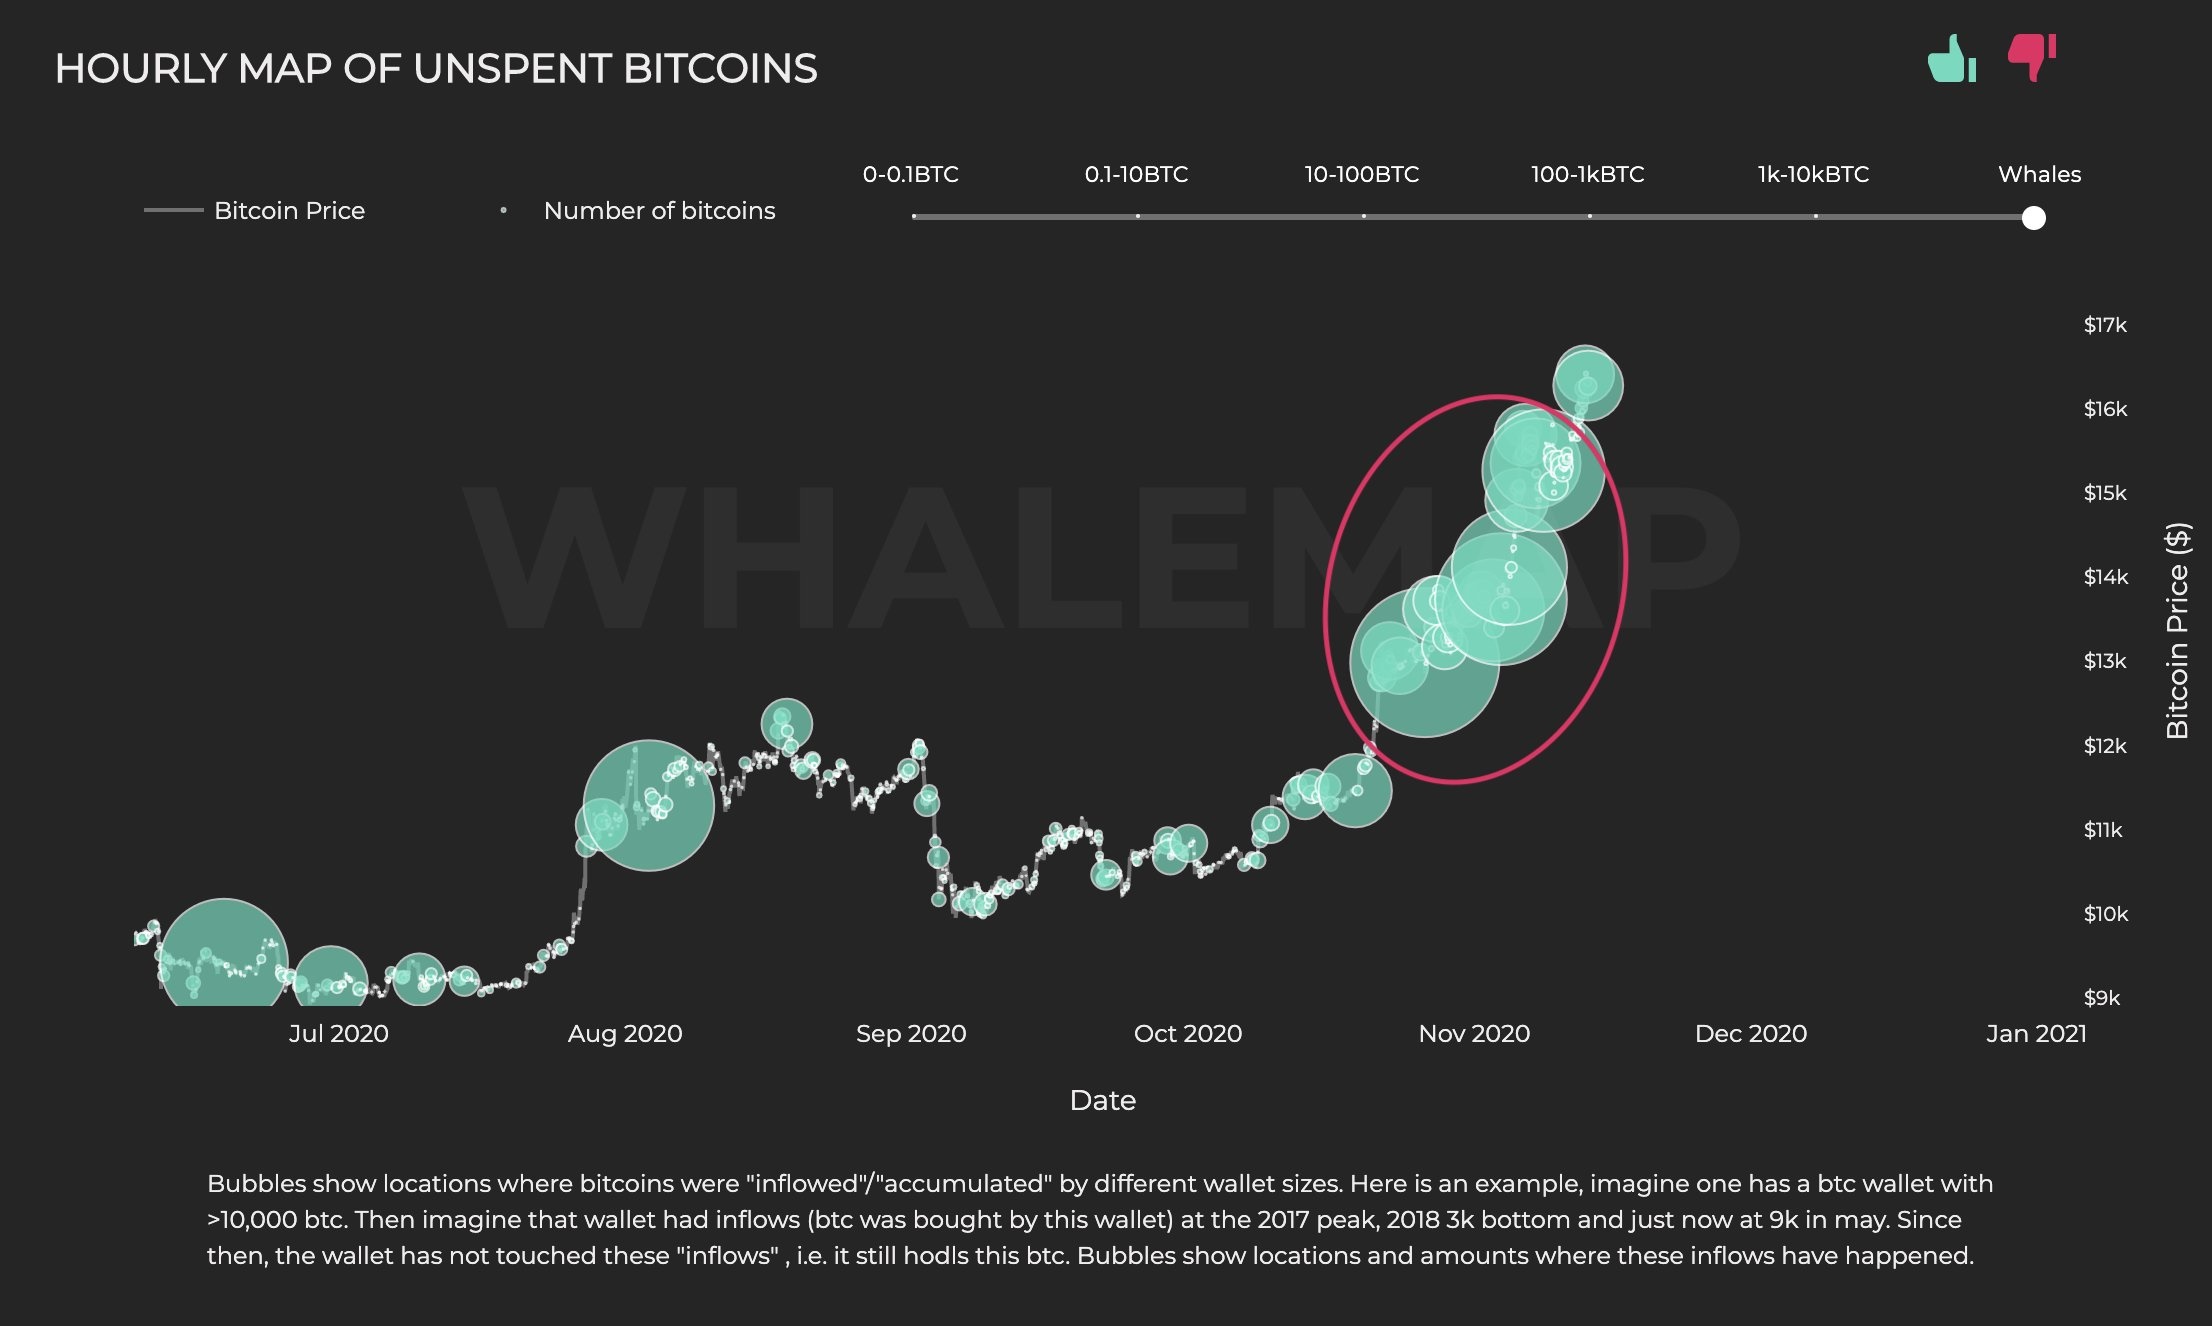 نمودار فومو - خوشه های نهنگ بیت کوین، دلیلی بر وجود فوموی سازمانی در پشت رالی اخیر